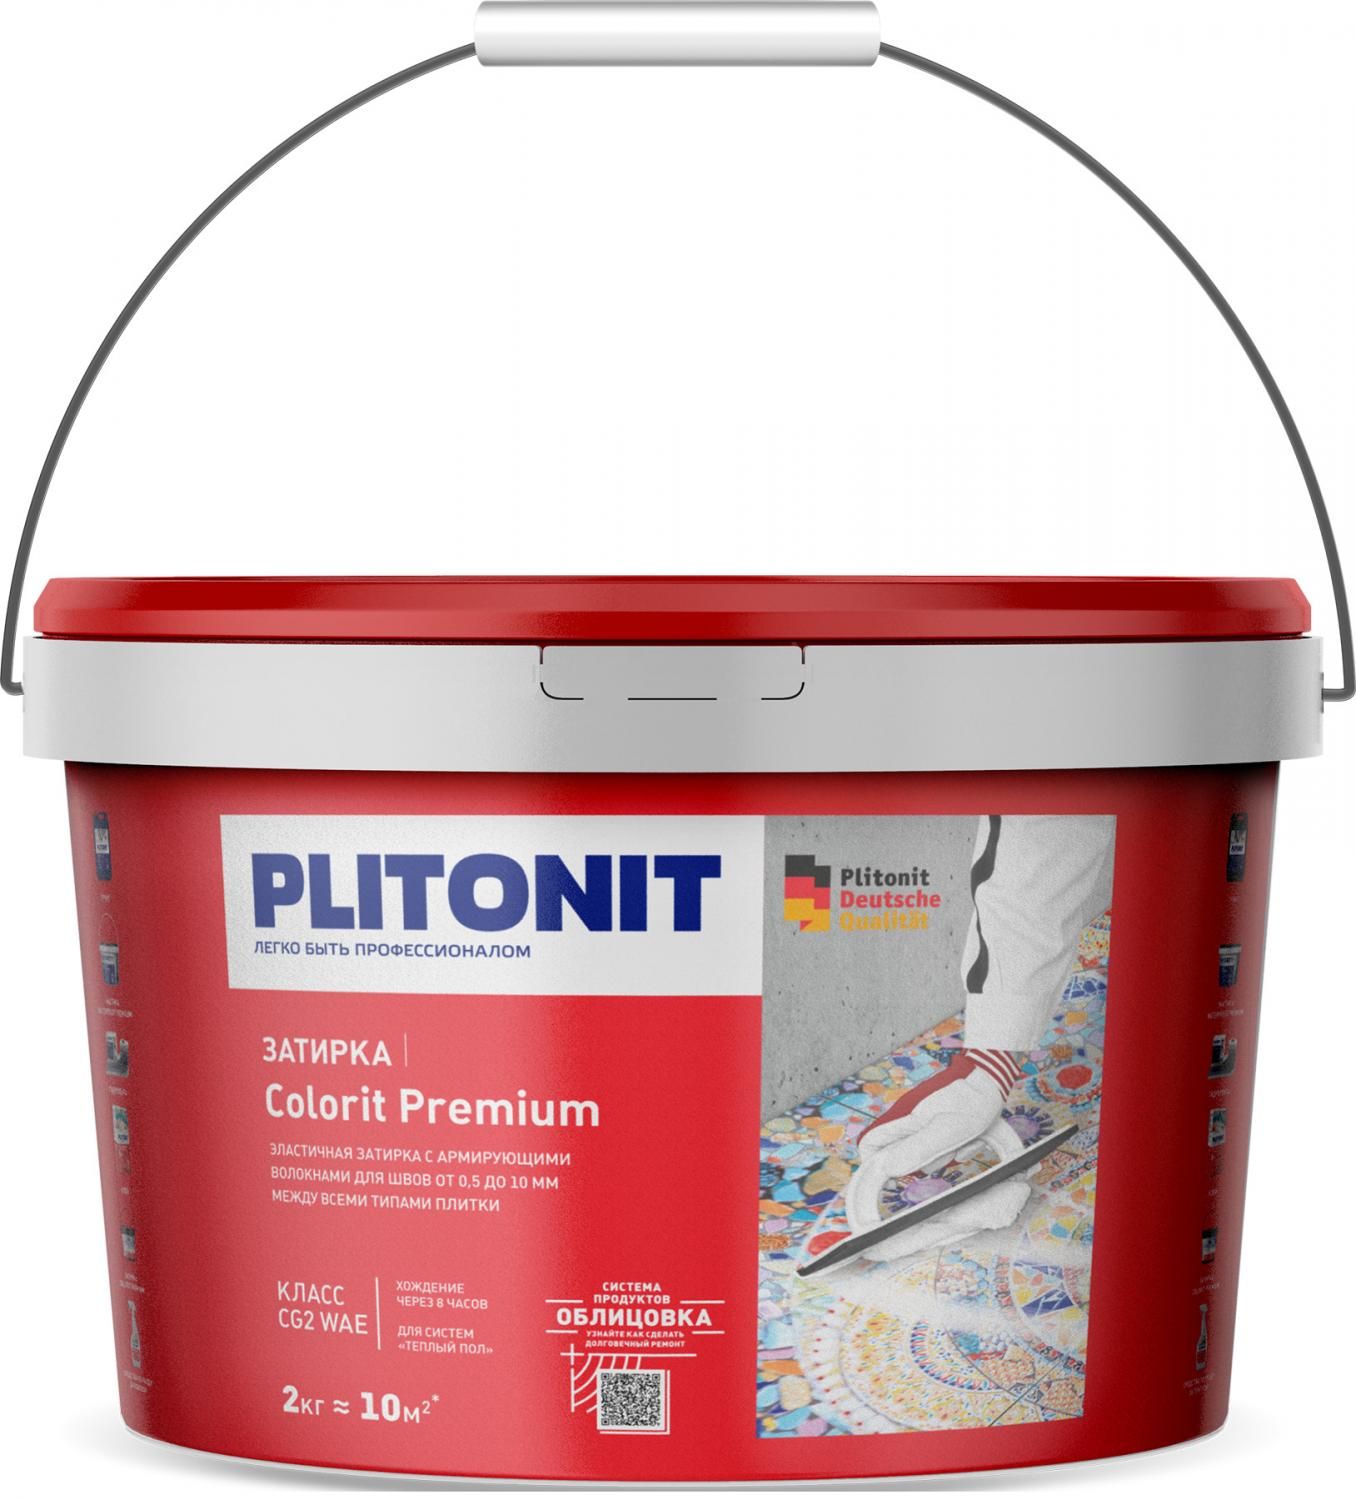 Купить Затирка Plitonit Colorit Premium охра 2 кг цементная